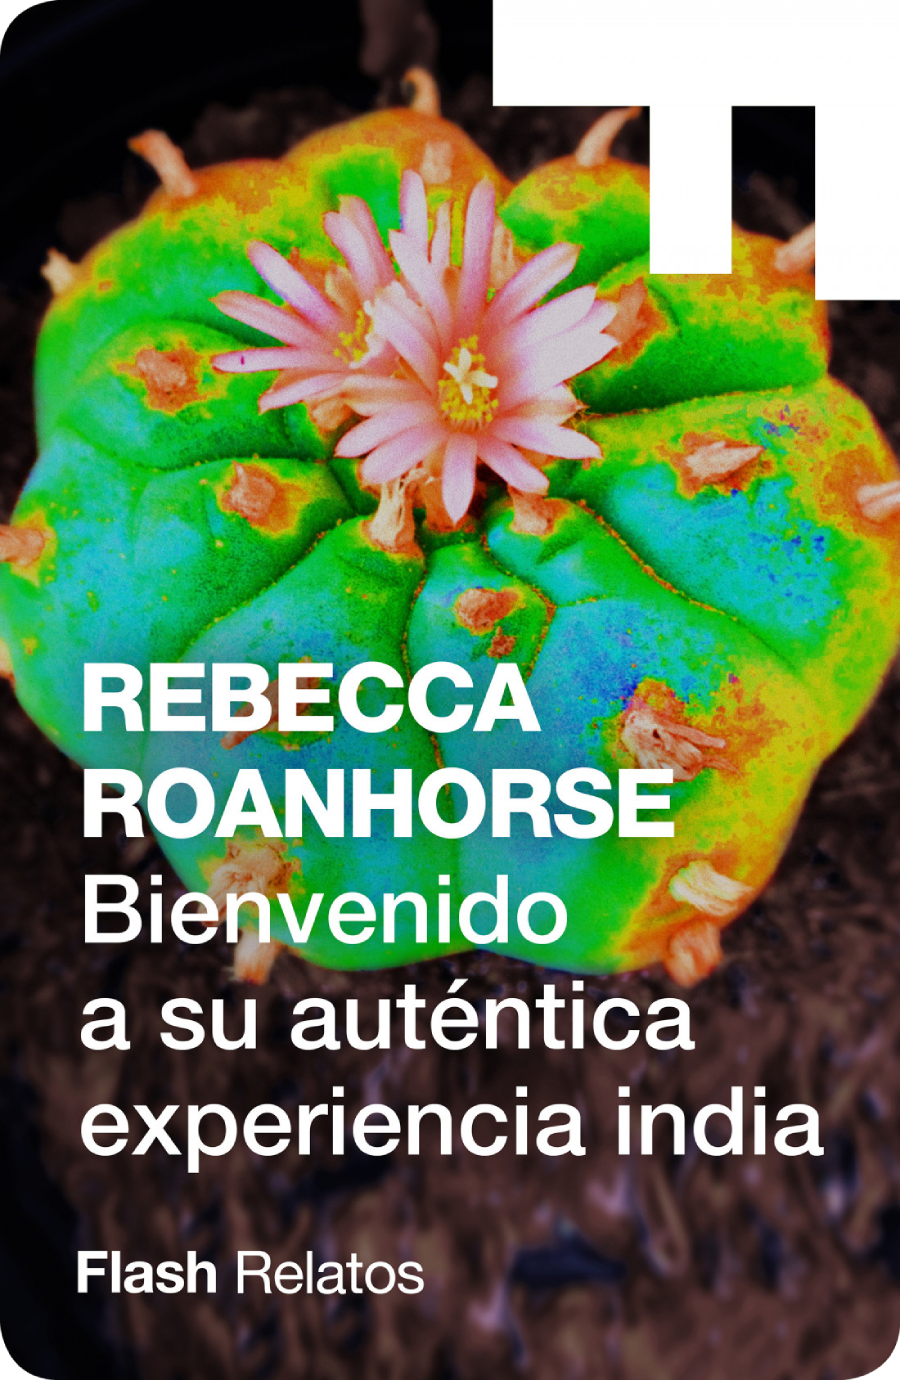 BIENVENIDO A SU AUTÉNTICA EXPERIENCIA INDIA de Rebecca Roanhorse